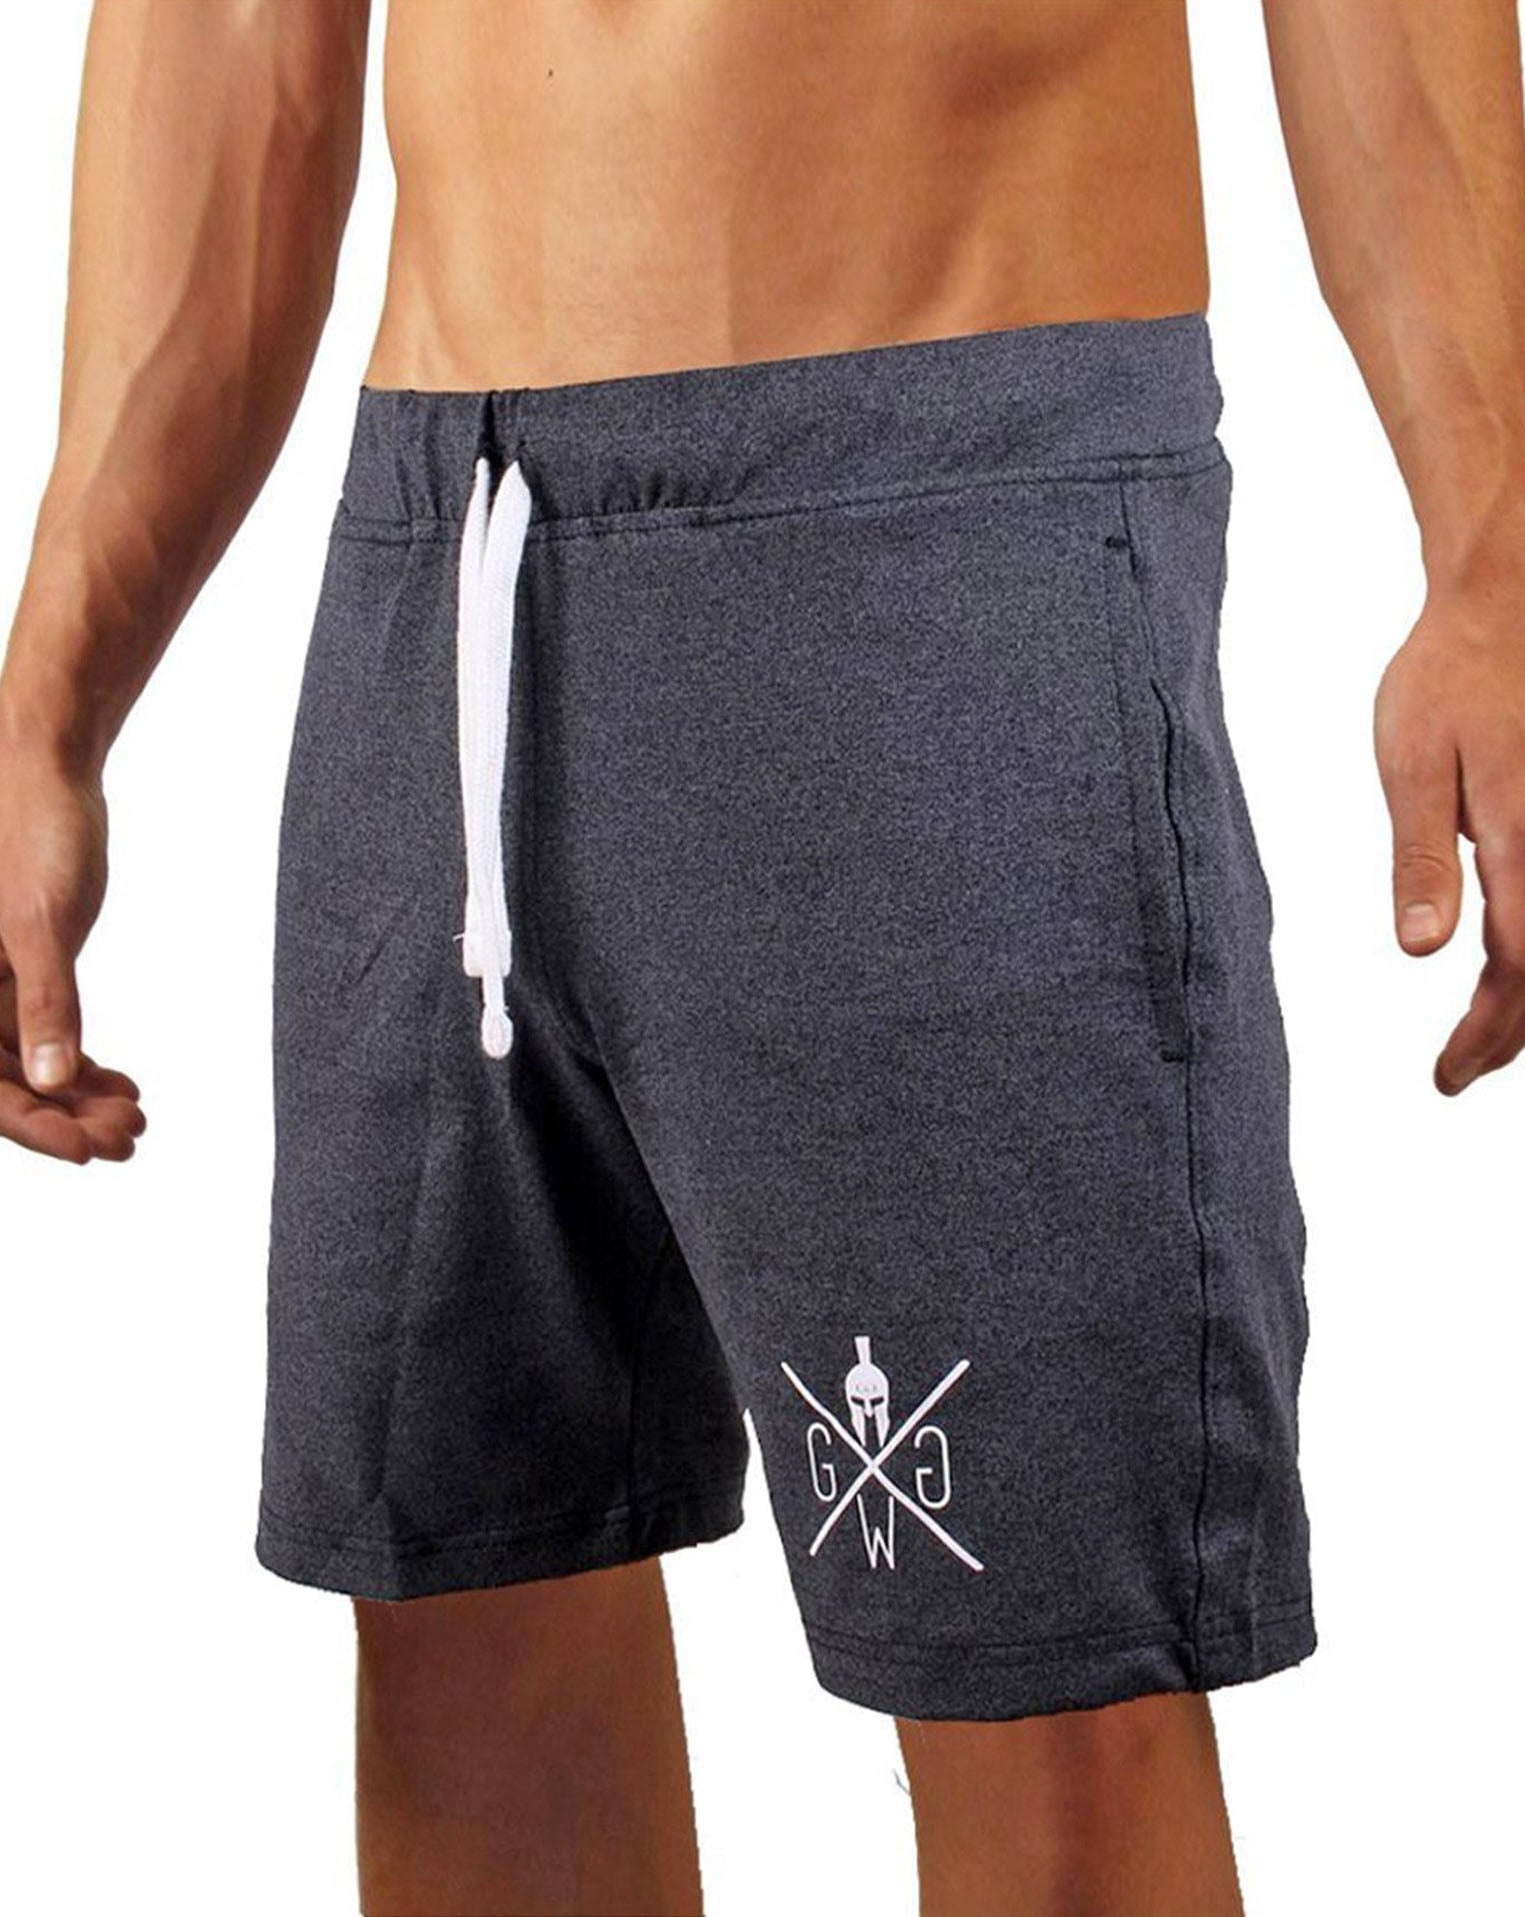 Dunkelgraue Herren Fitness Shorts mit elastischem Material für maximale Bewegungsfreiheit und Komfort, von Gym Generation.